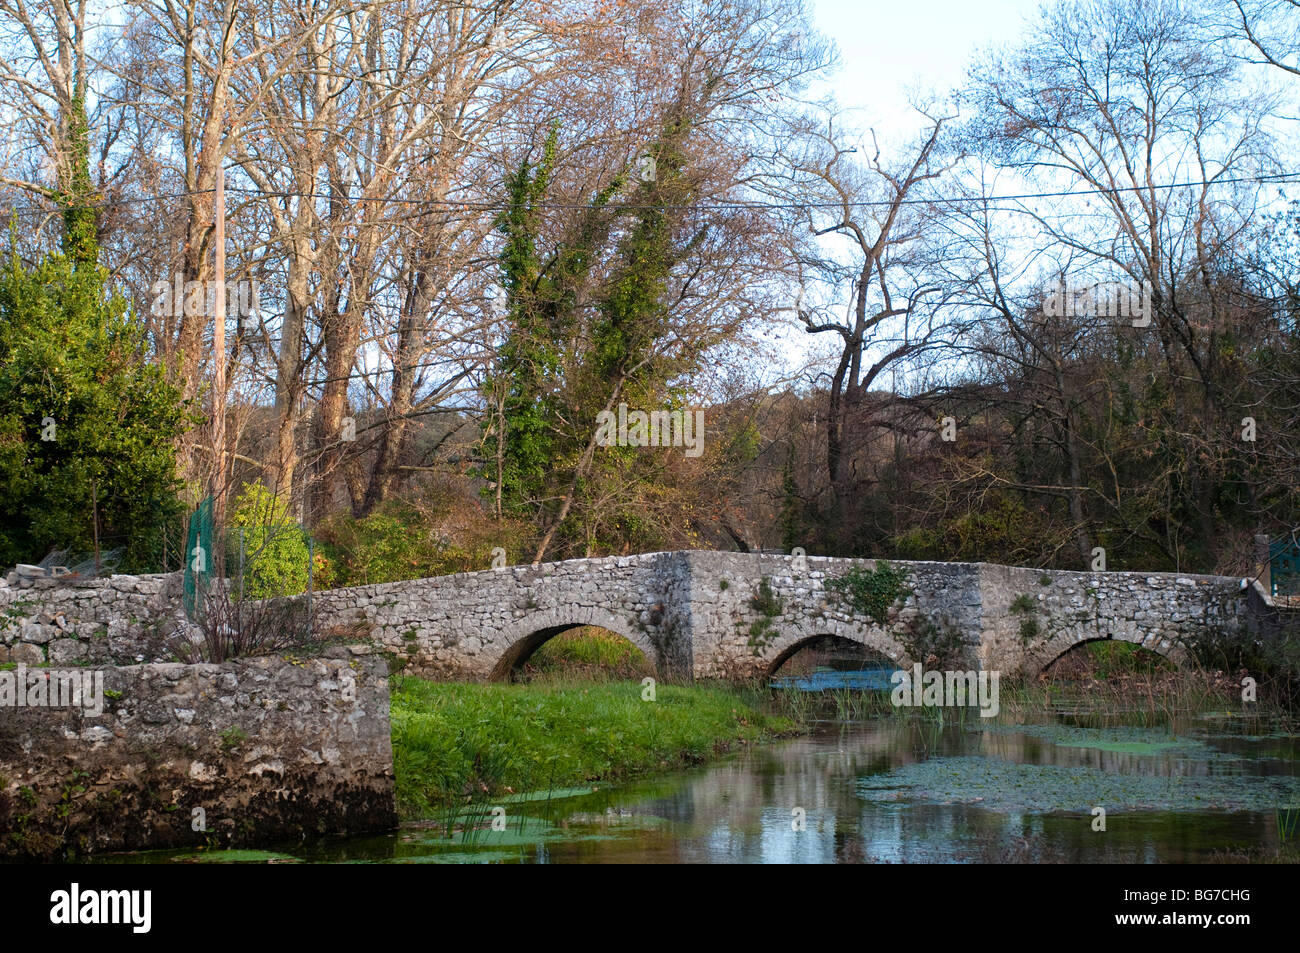 Pont et rivière dans le village de Brissac, Hérault, sud de la France Banque D'Images